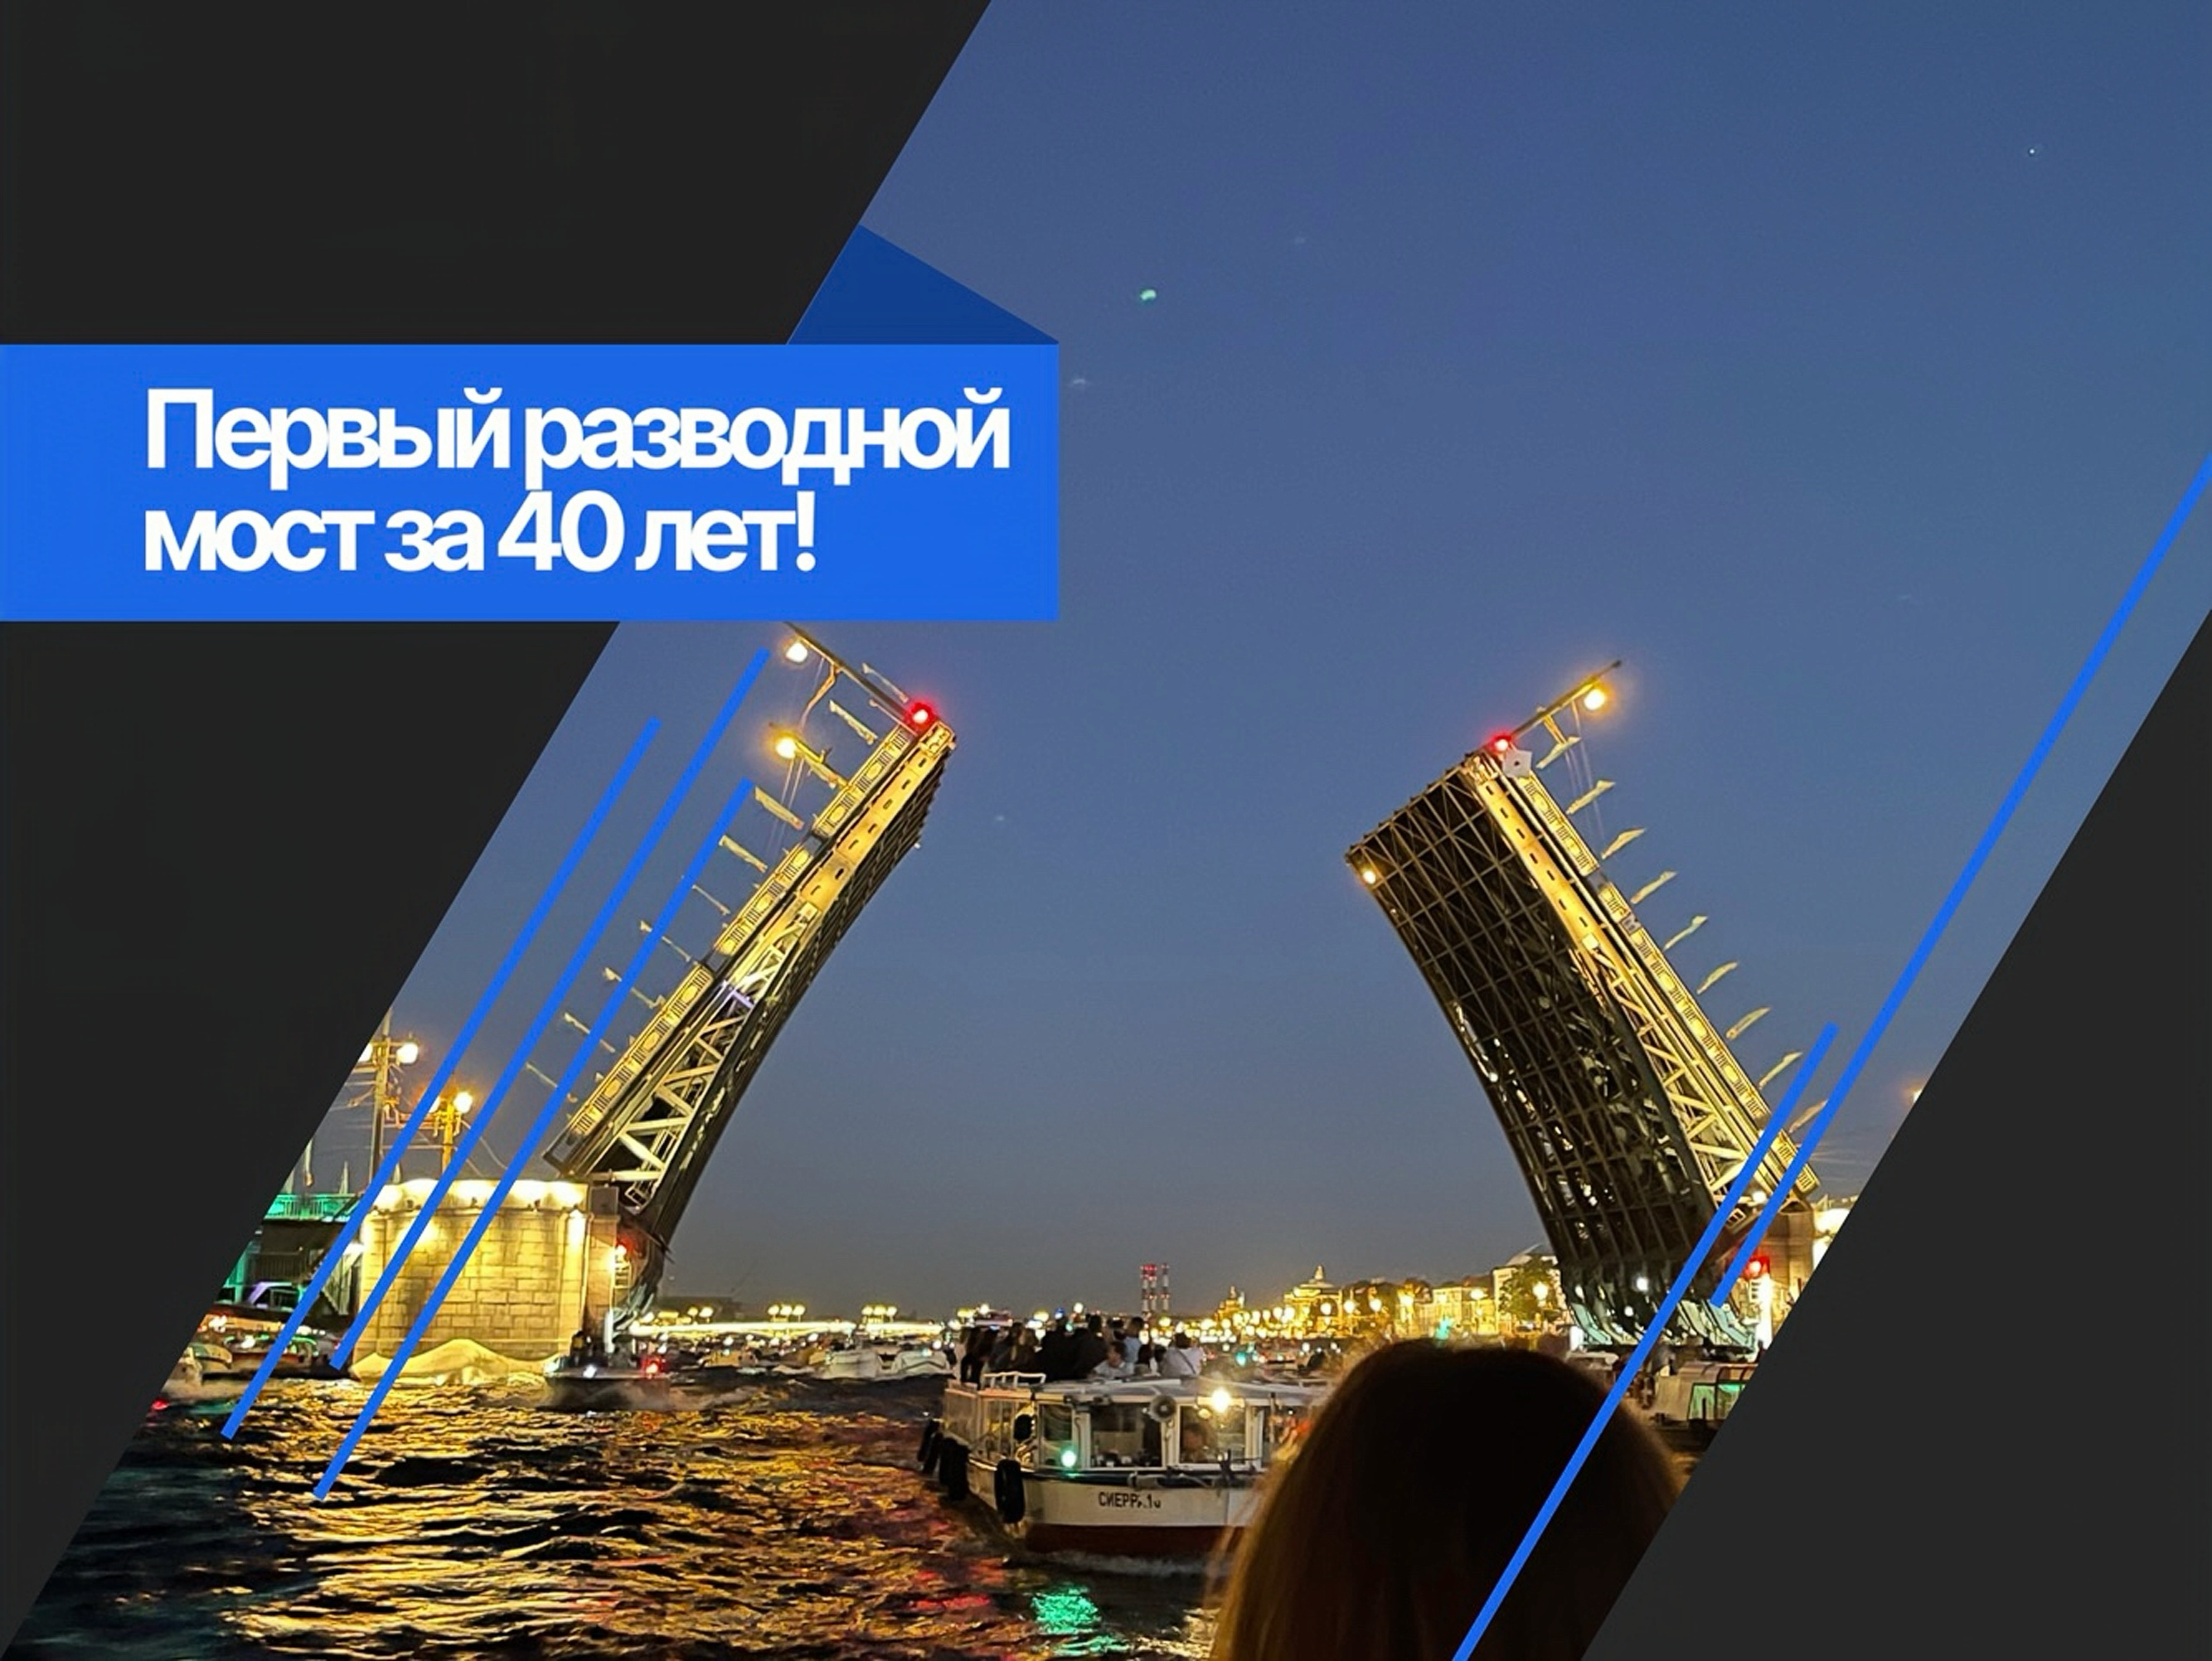 новый разводной мост в Петербурге